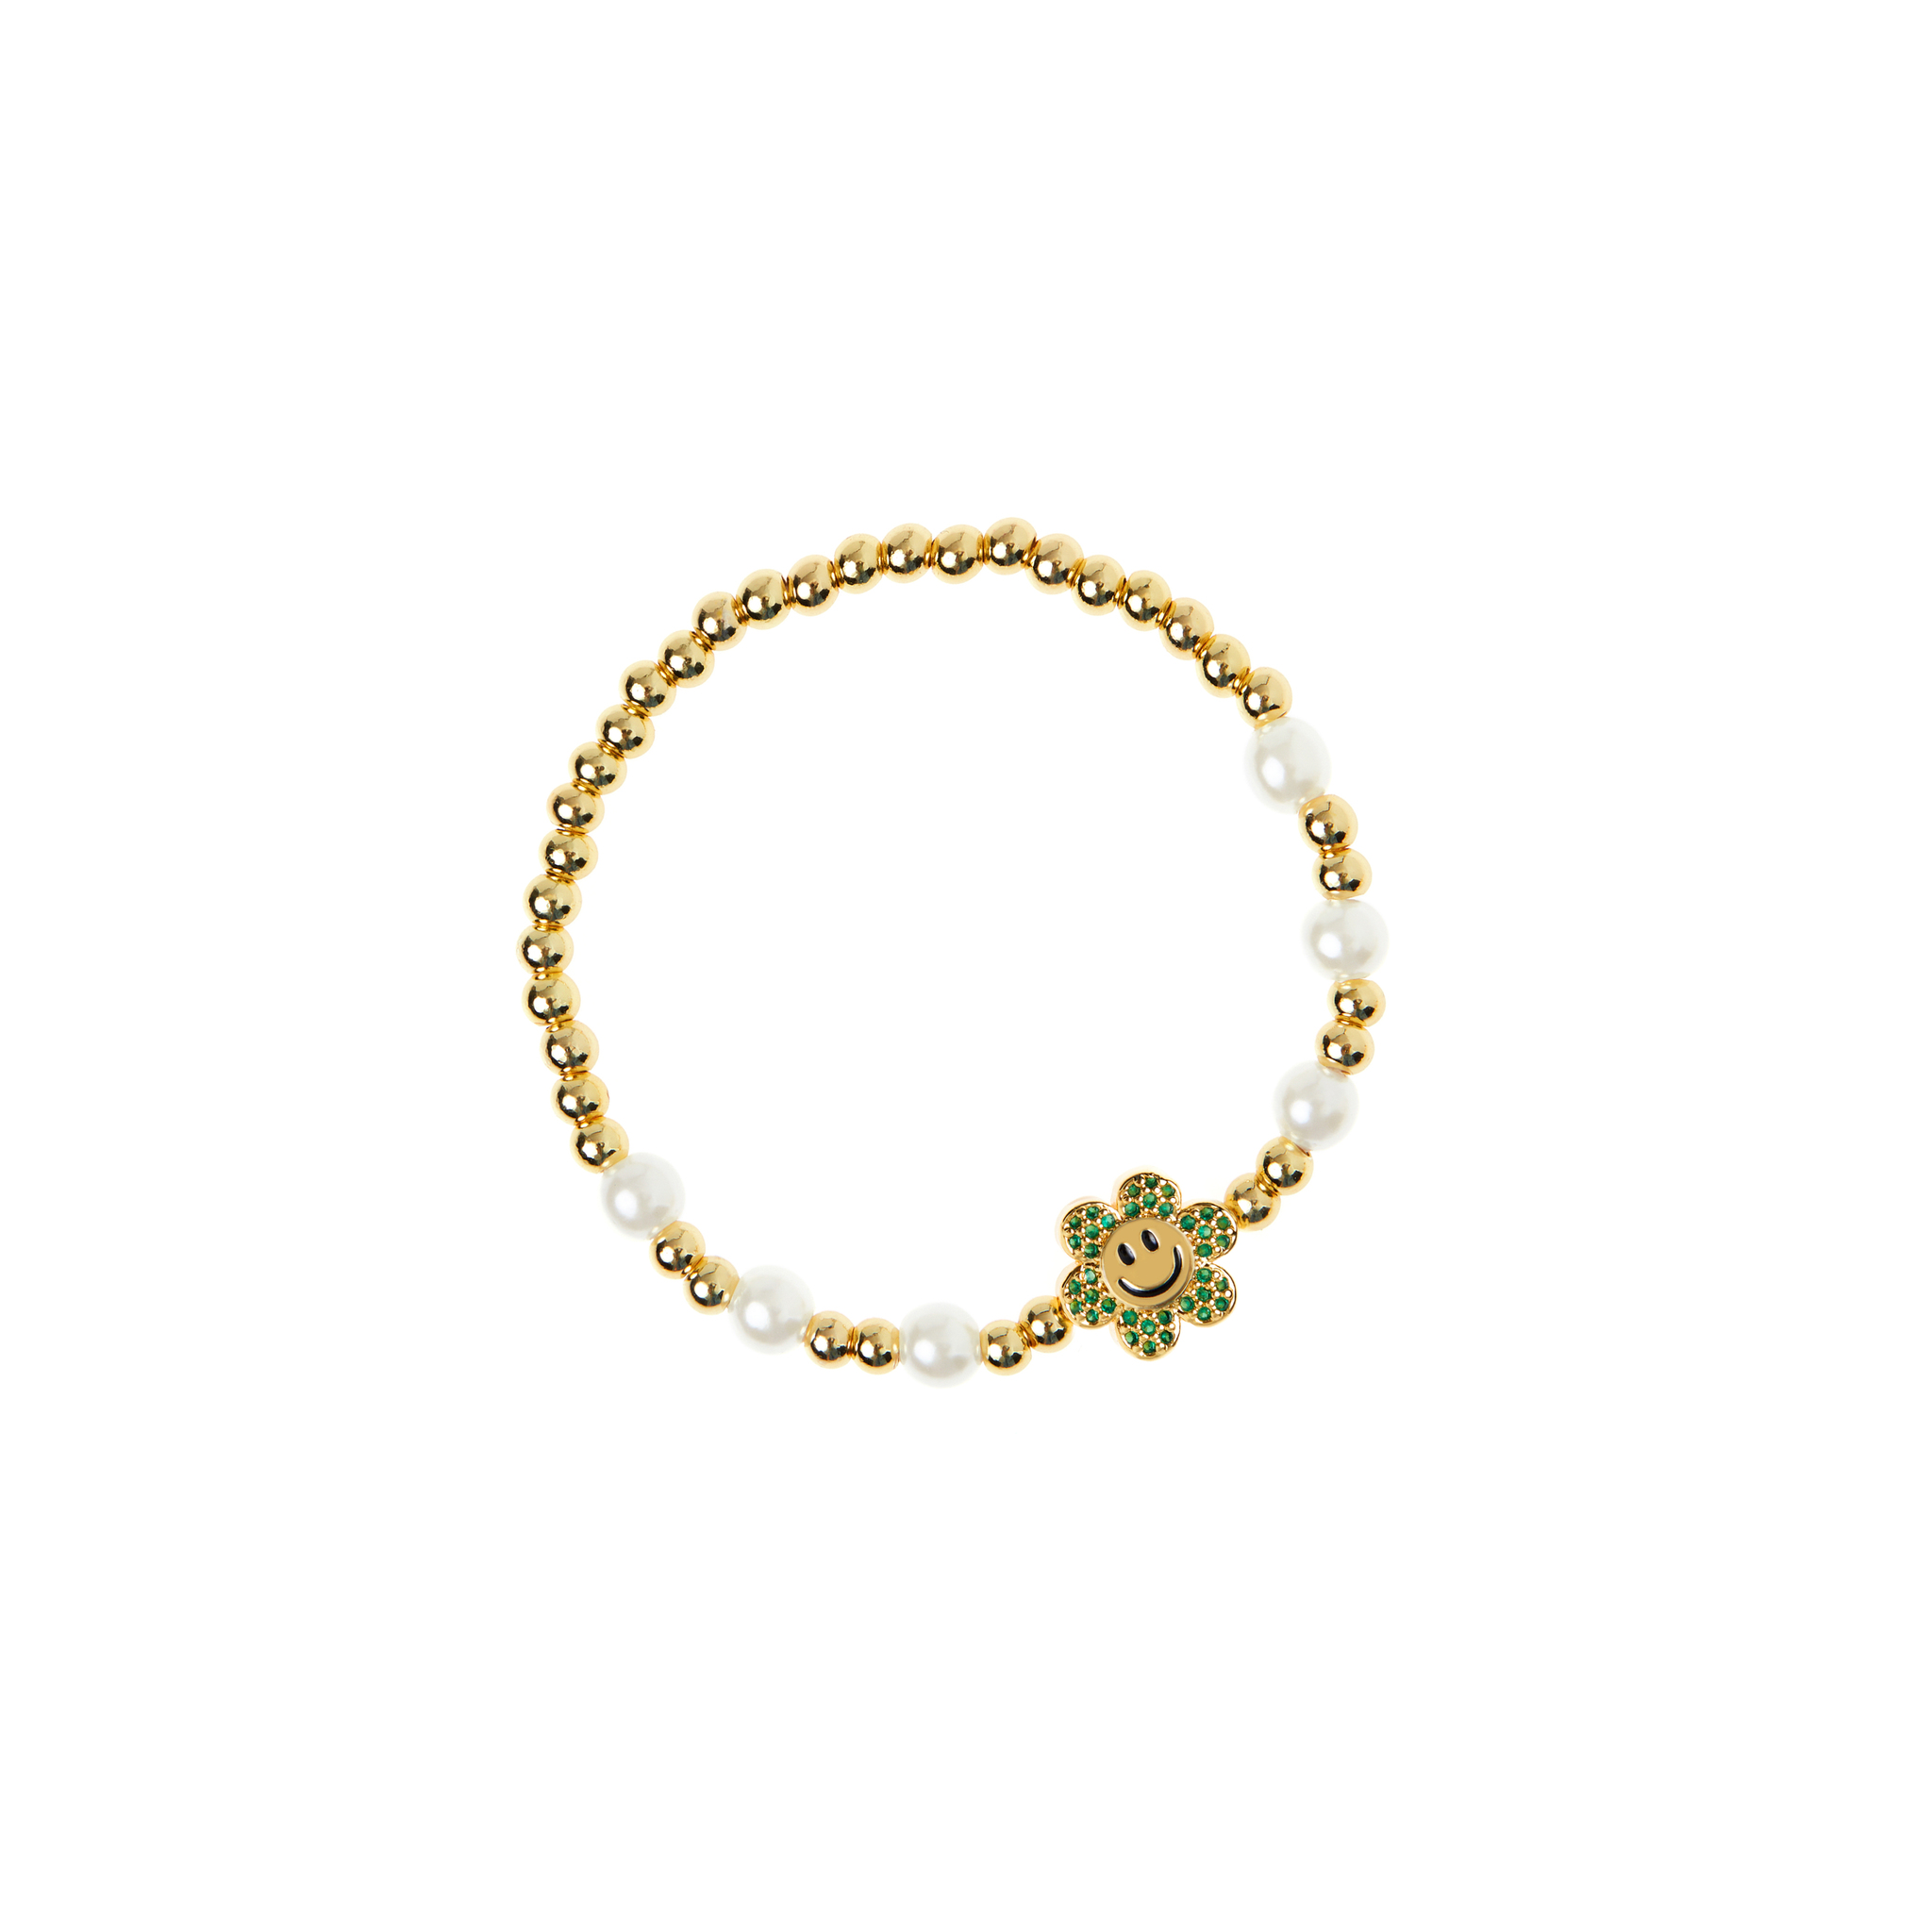 DÉJÀ VU Браслет Pearly Gold Smiley Flowers Bracelet - Green déjà vu браслет pearly gold smiley flowers bracelet pink